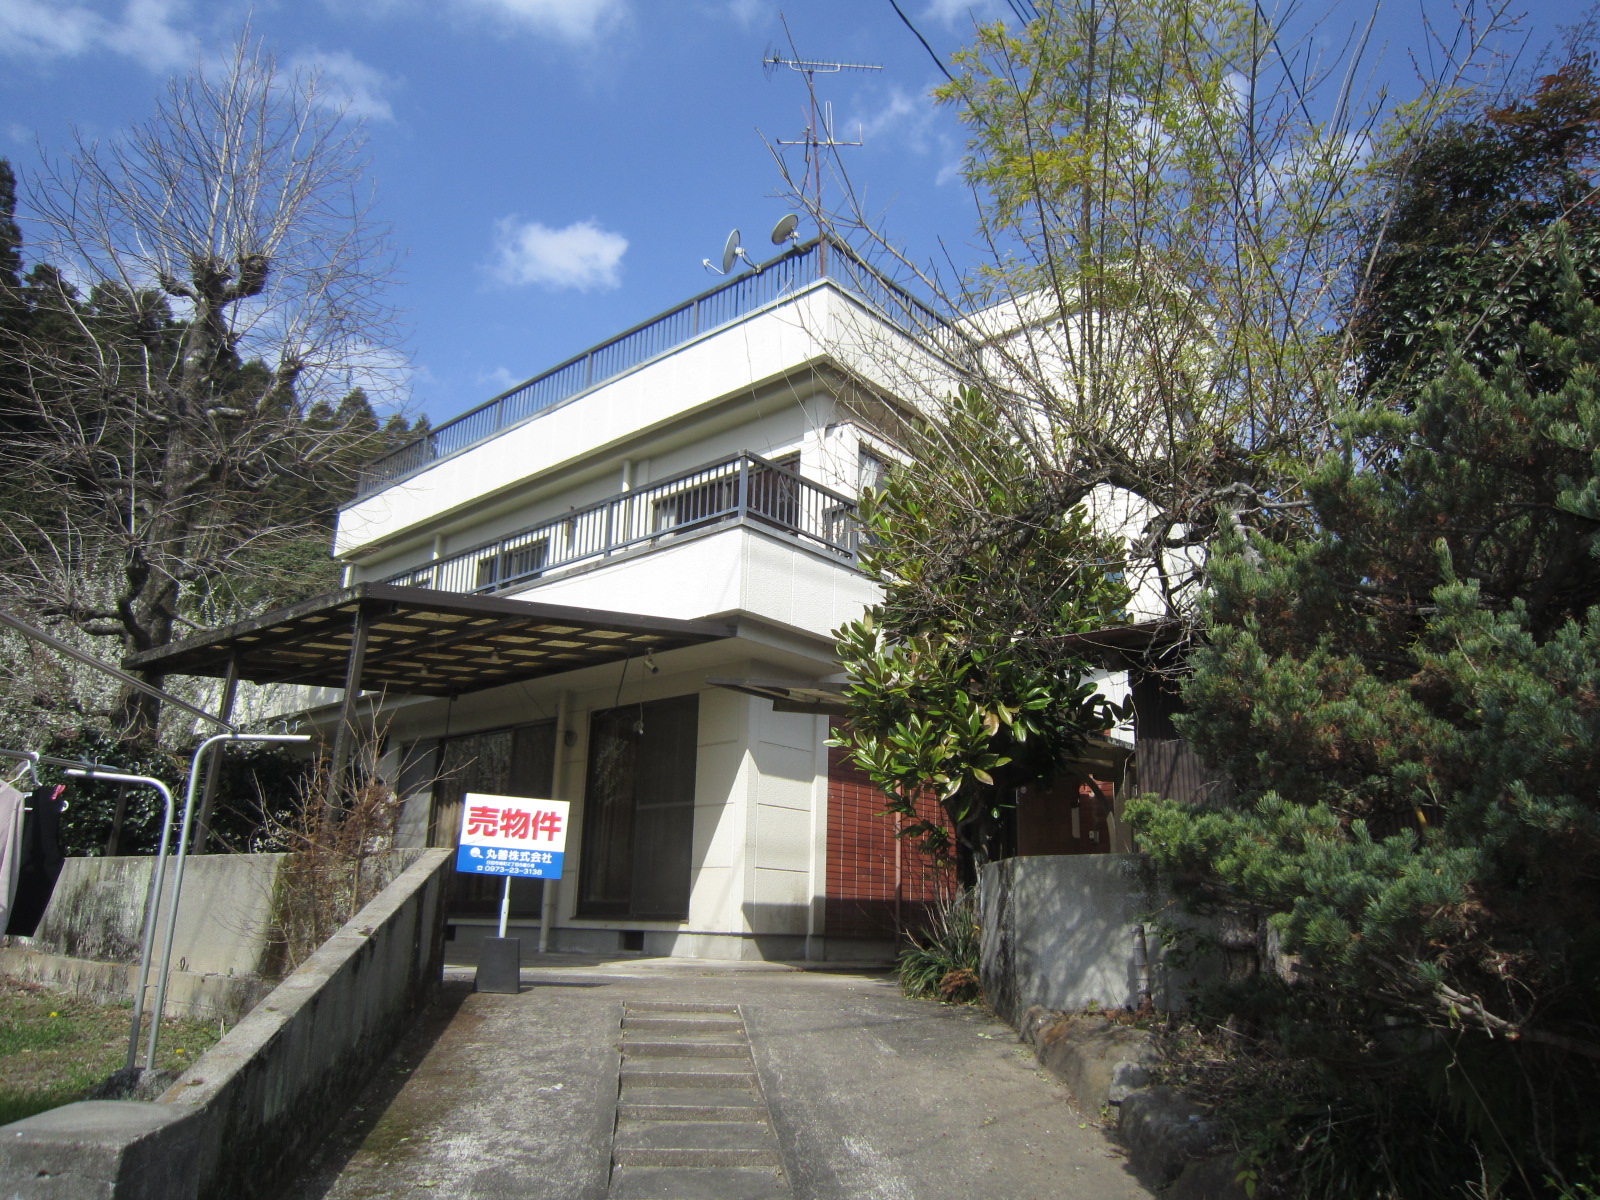 小迫町３階建中古住宅を掲載しました。